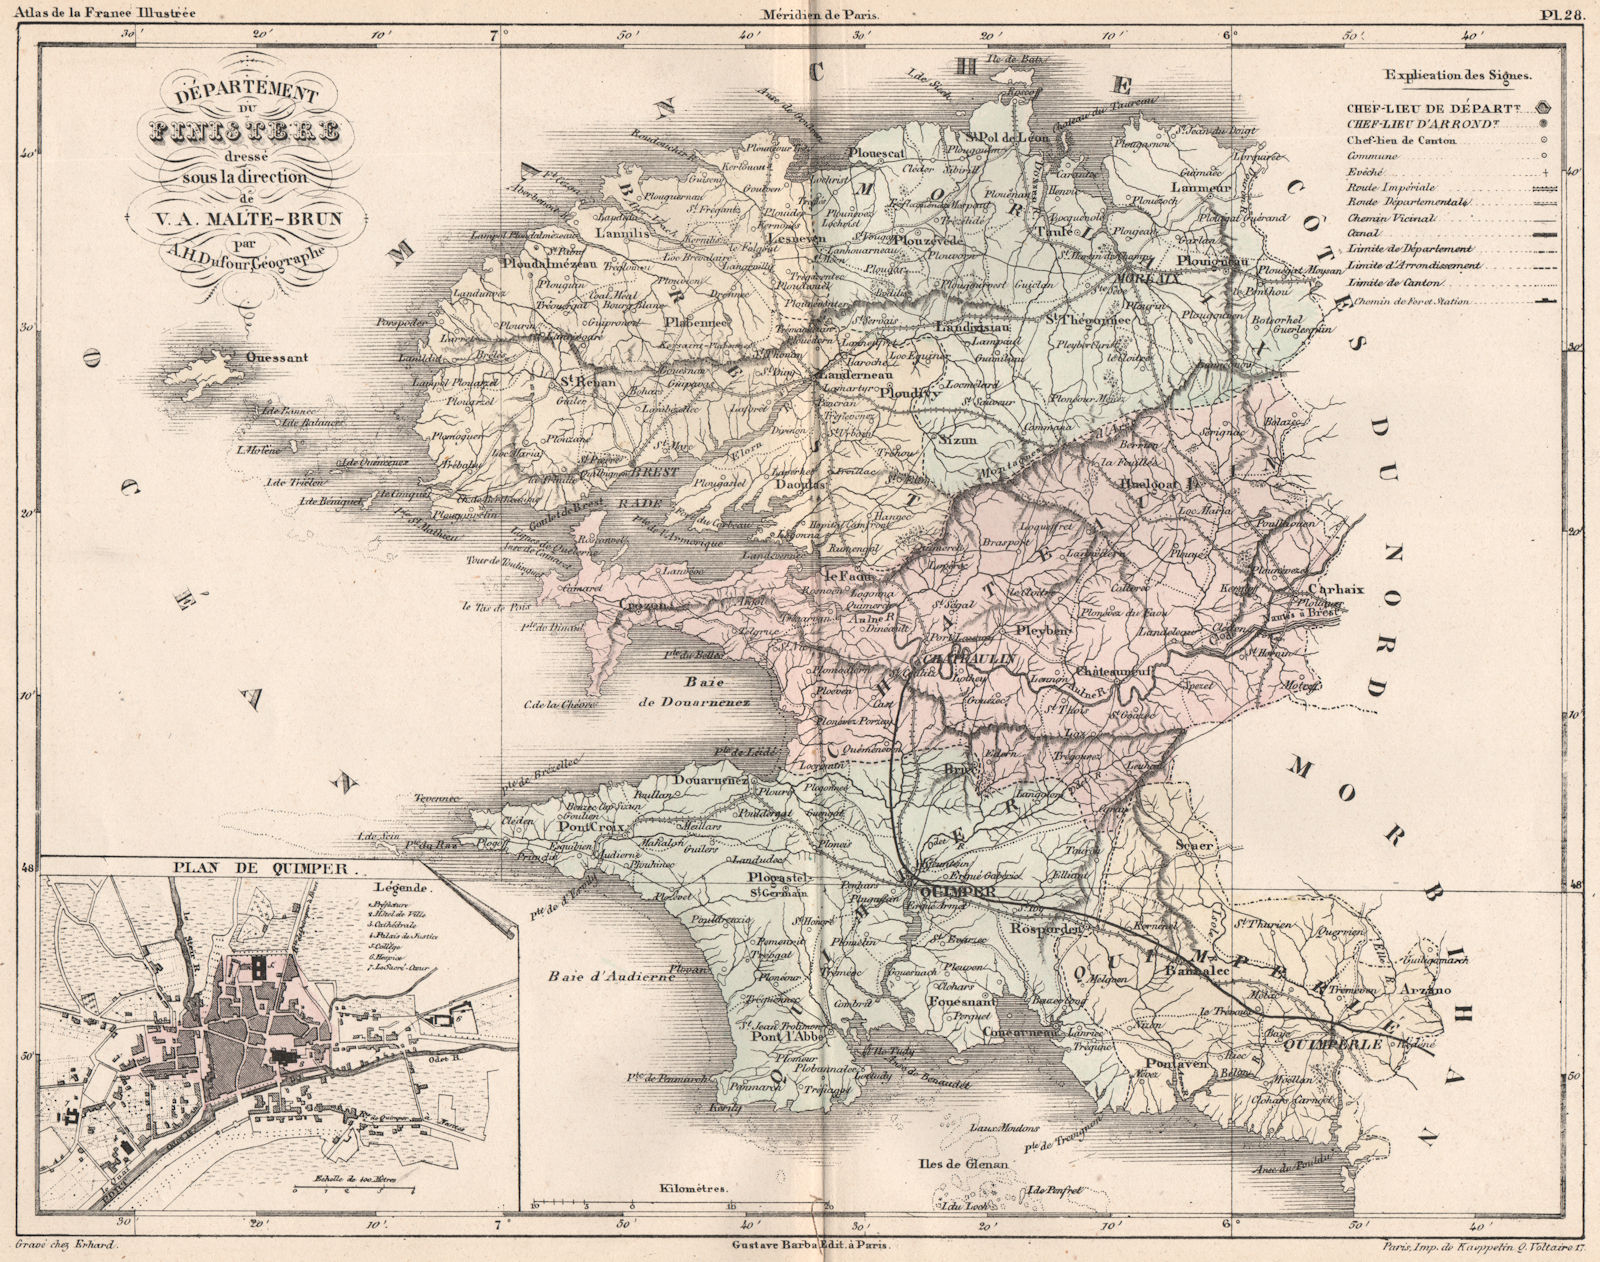 FINISTÈRE. Carte du département. Finistere. Plan de Quimper.MALTE-BRUN 1852 map